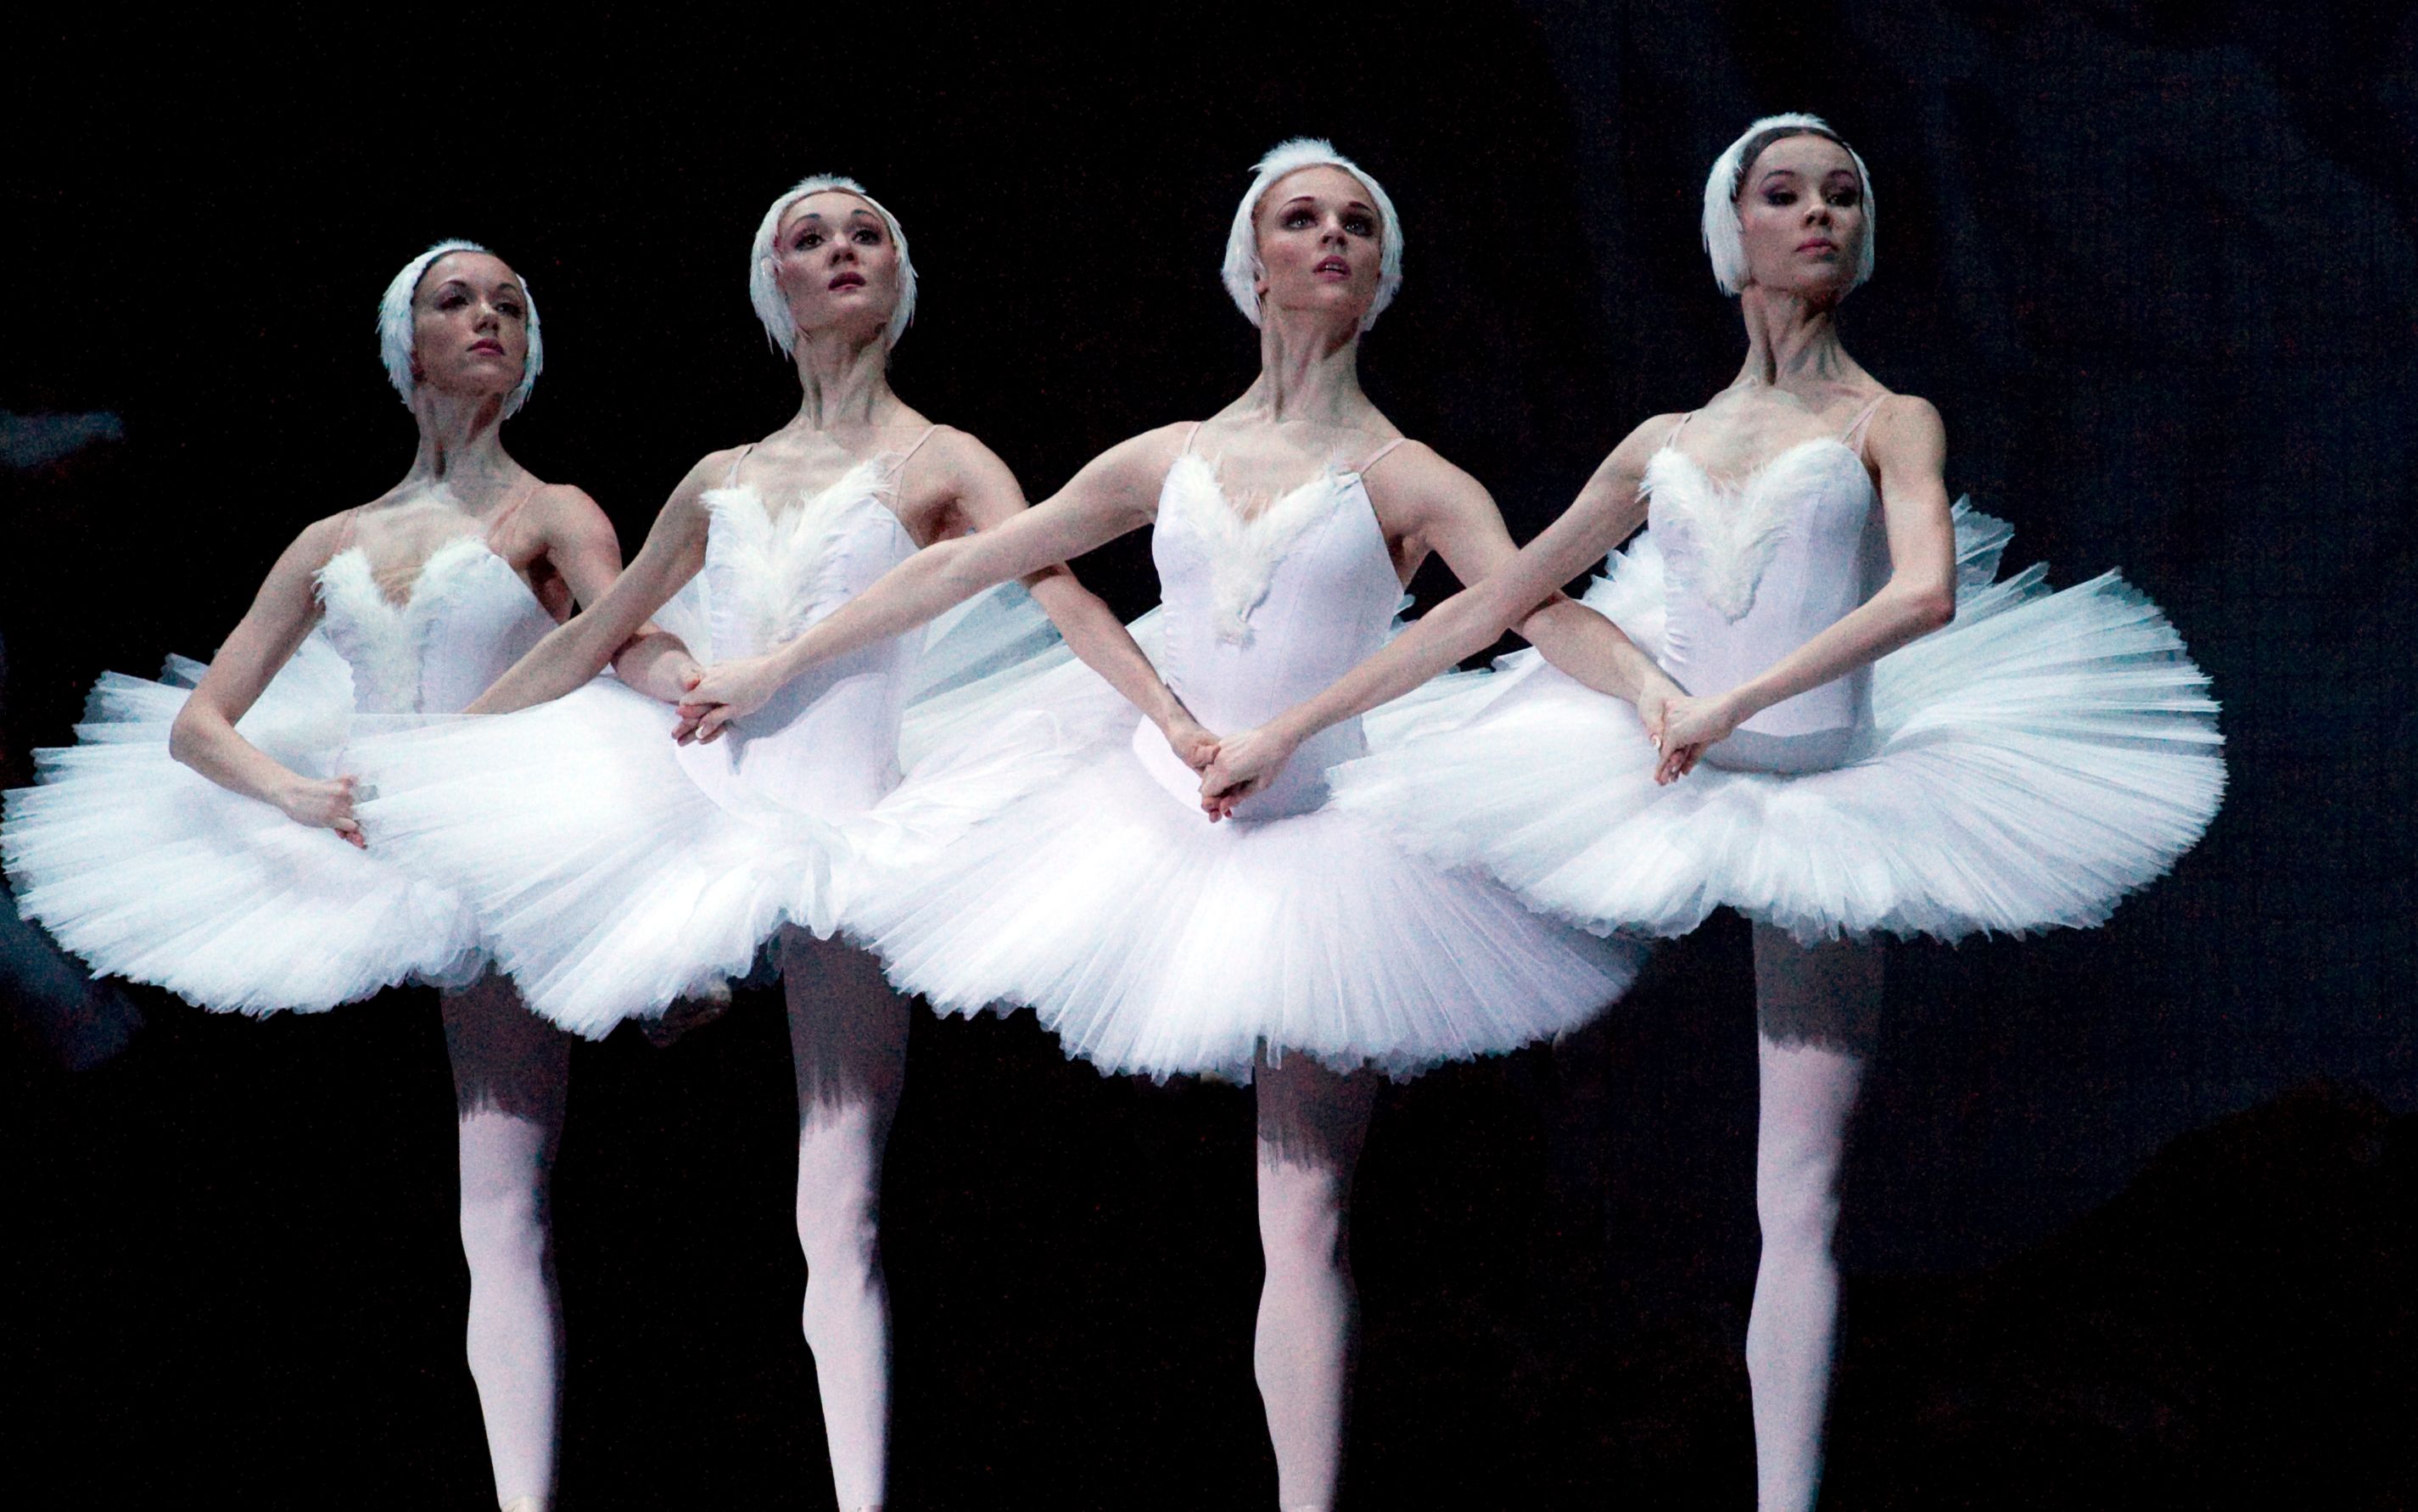 舞蹈之美-现代芭蕾舞摄影图片